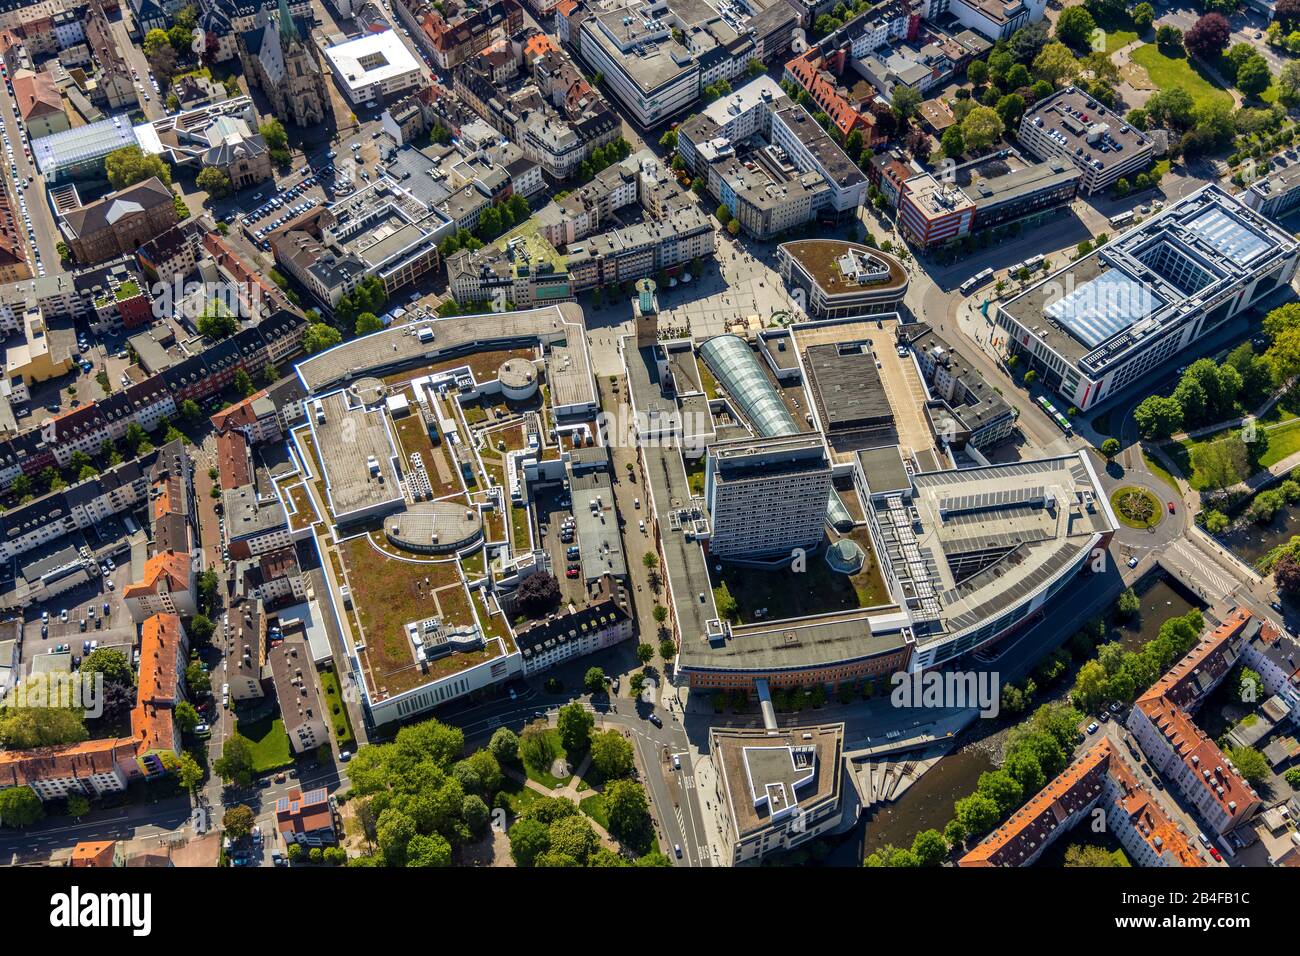 Luftbild zur Hagener Innenstadt mit historischem Rathaus, Einkaufszentrum RATHAUS GALERIE HAGEN Friedrich-Ebert-Platz in Hagen im Ruhrgebiet im Land Nordrhein-Westfalen, Deutschland Stockfoto